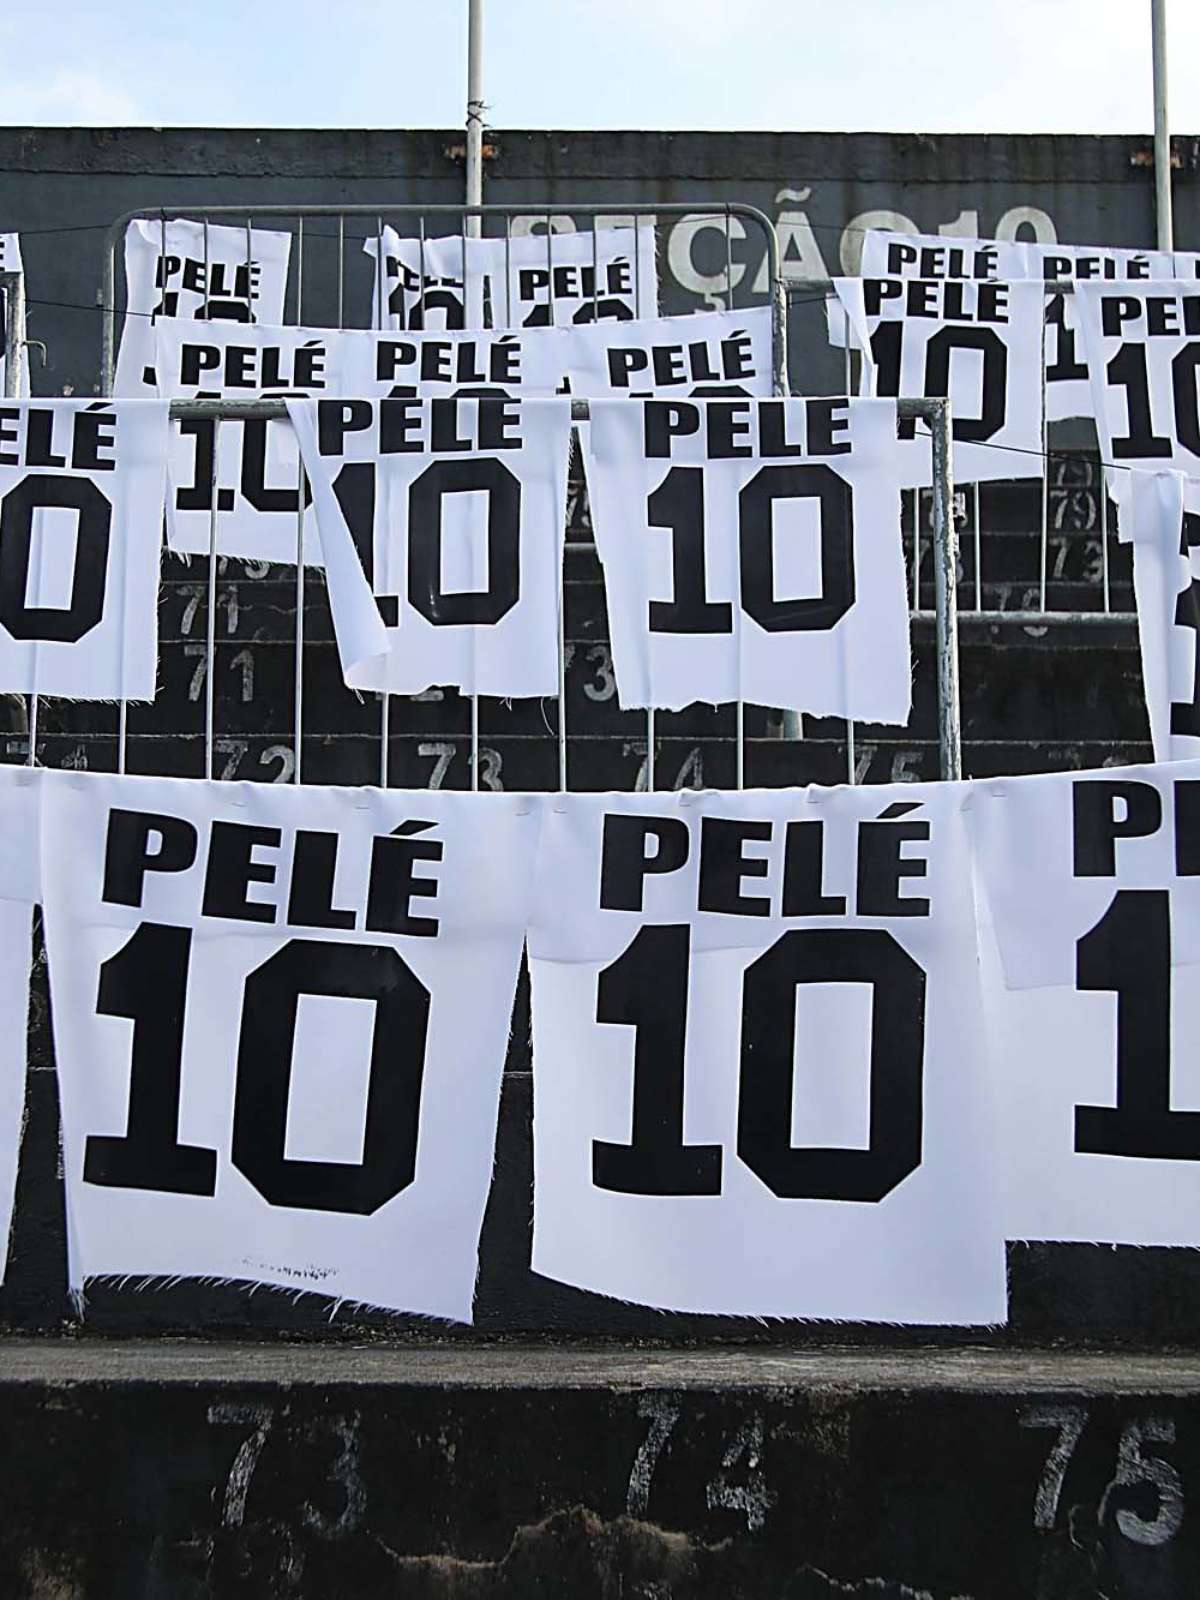 Inigualável: Pelé se torna verbete do dicionário - BAHIA NO AR